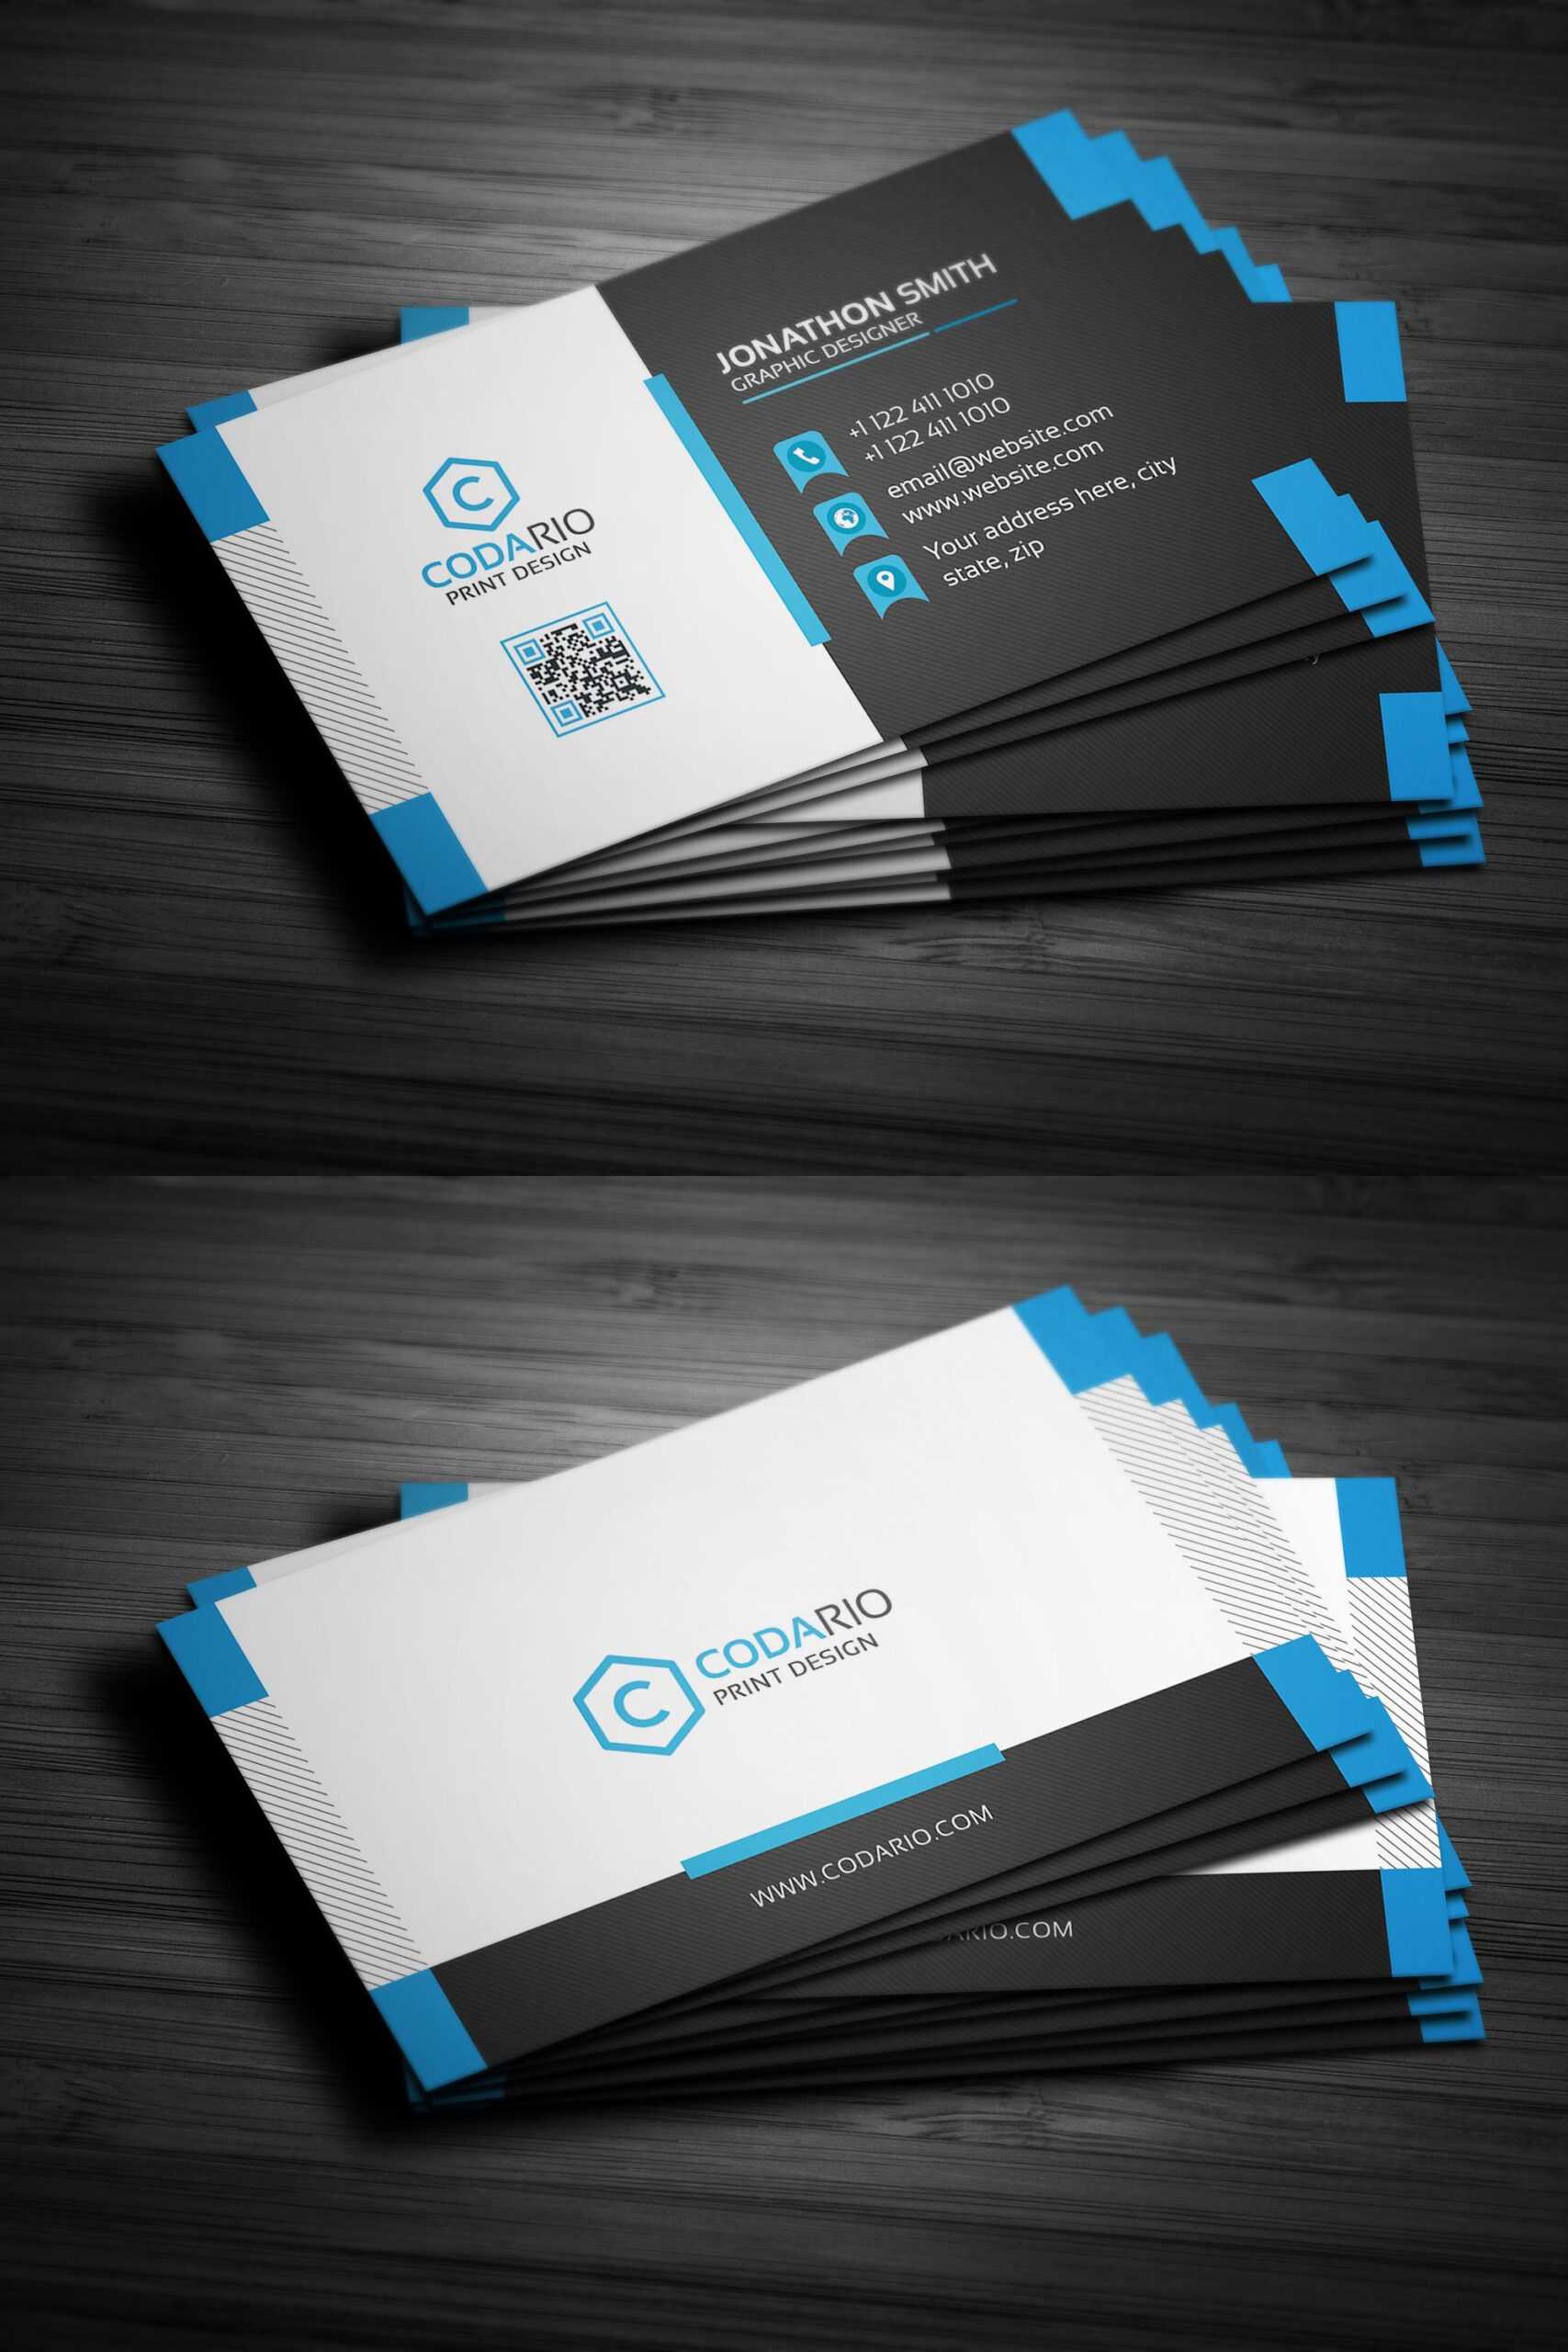 Modern Creative Business Card Template Psd | Business Card Pertaining To Creative Business Card Templates Psd